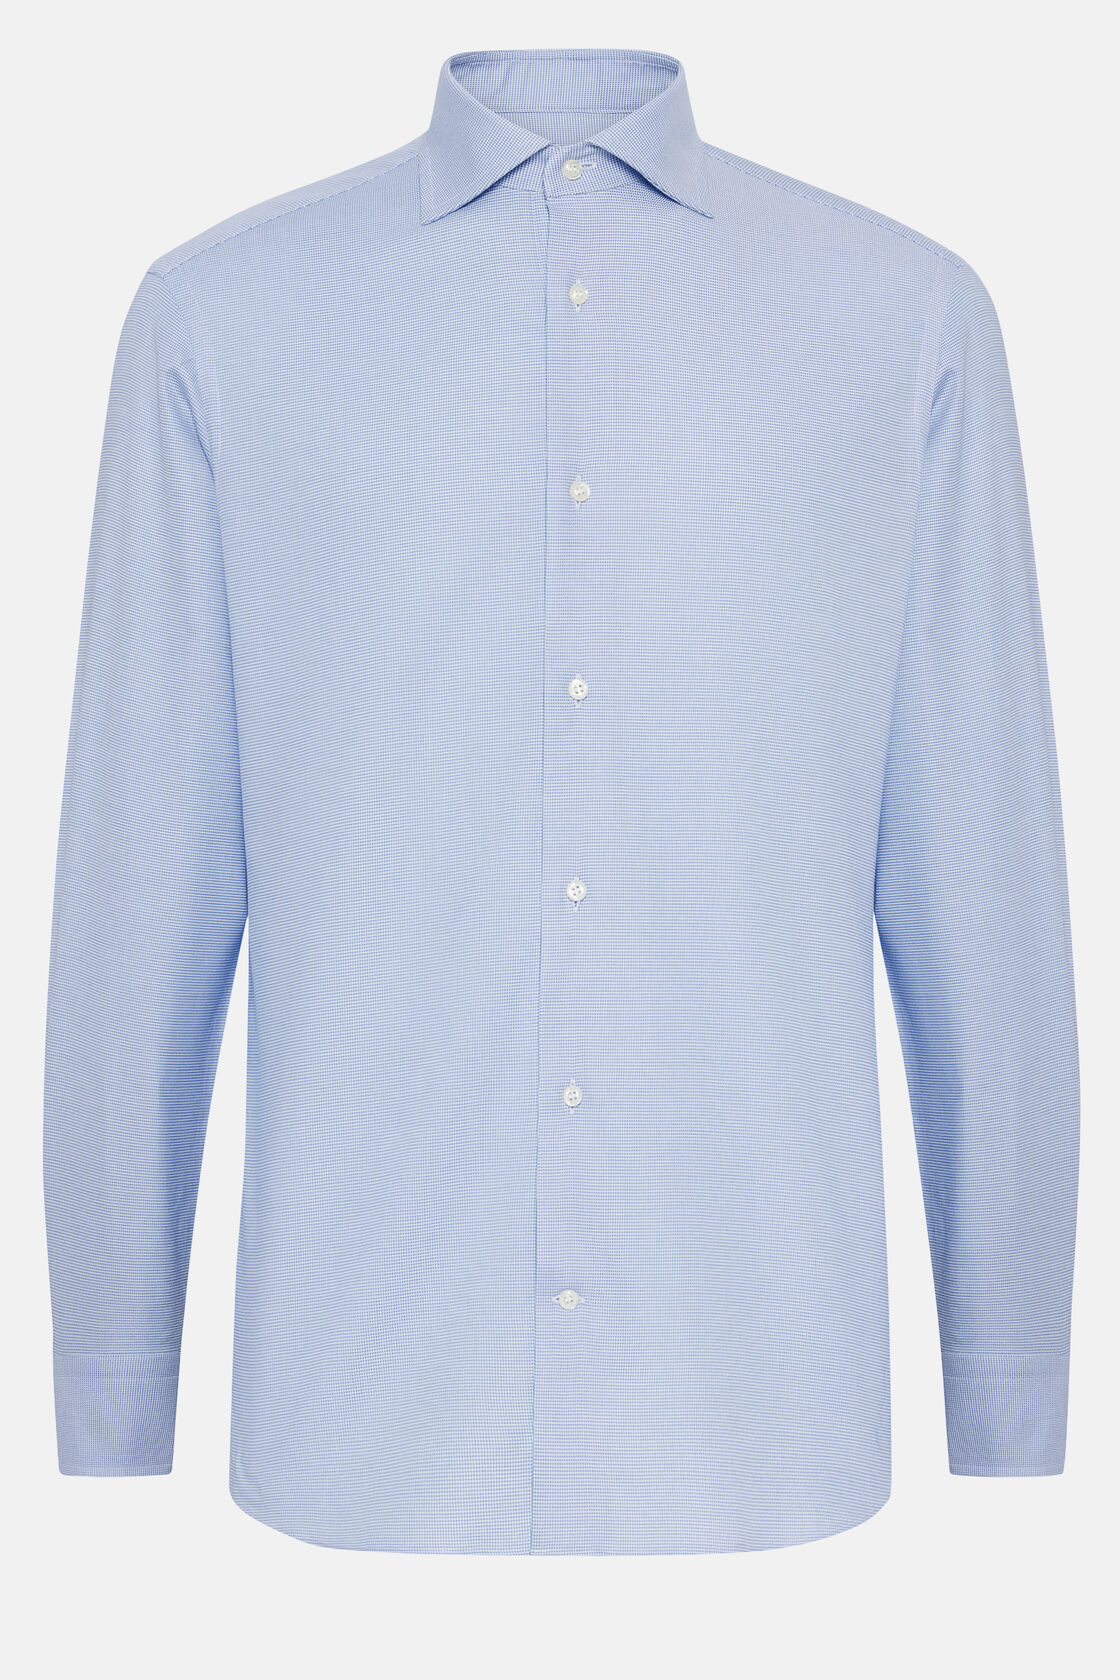 Γαλάζιο βαμβακερό μπλουζάκι πιε ντε πουλ σε στενή γραμμή, Light Blue, hi-res